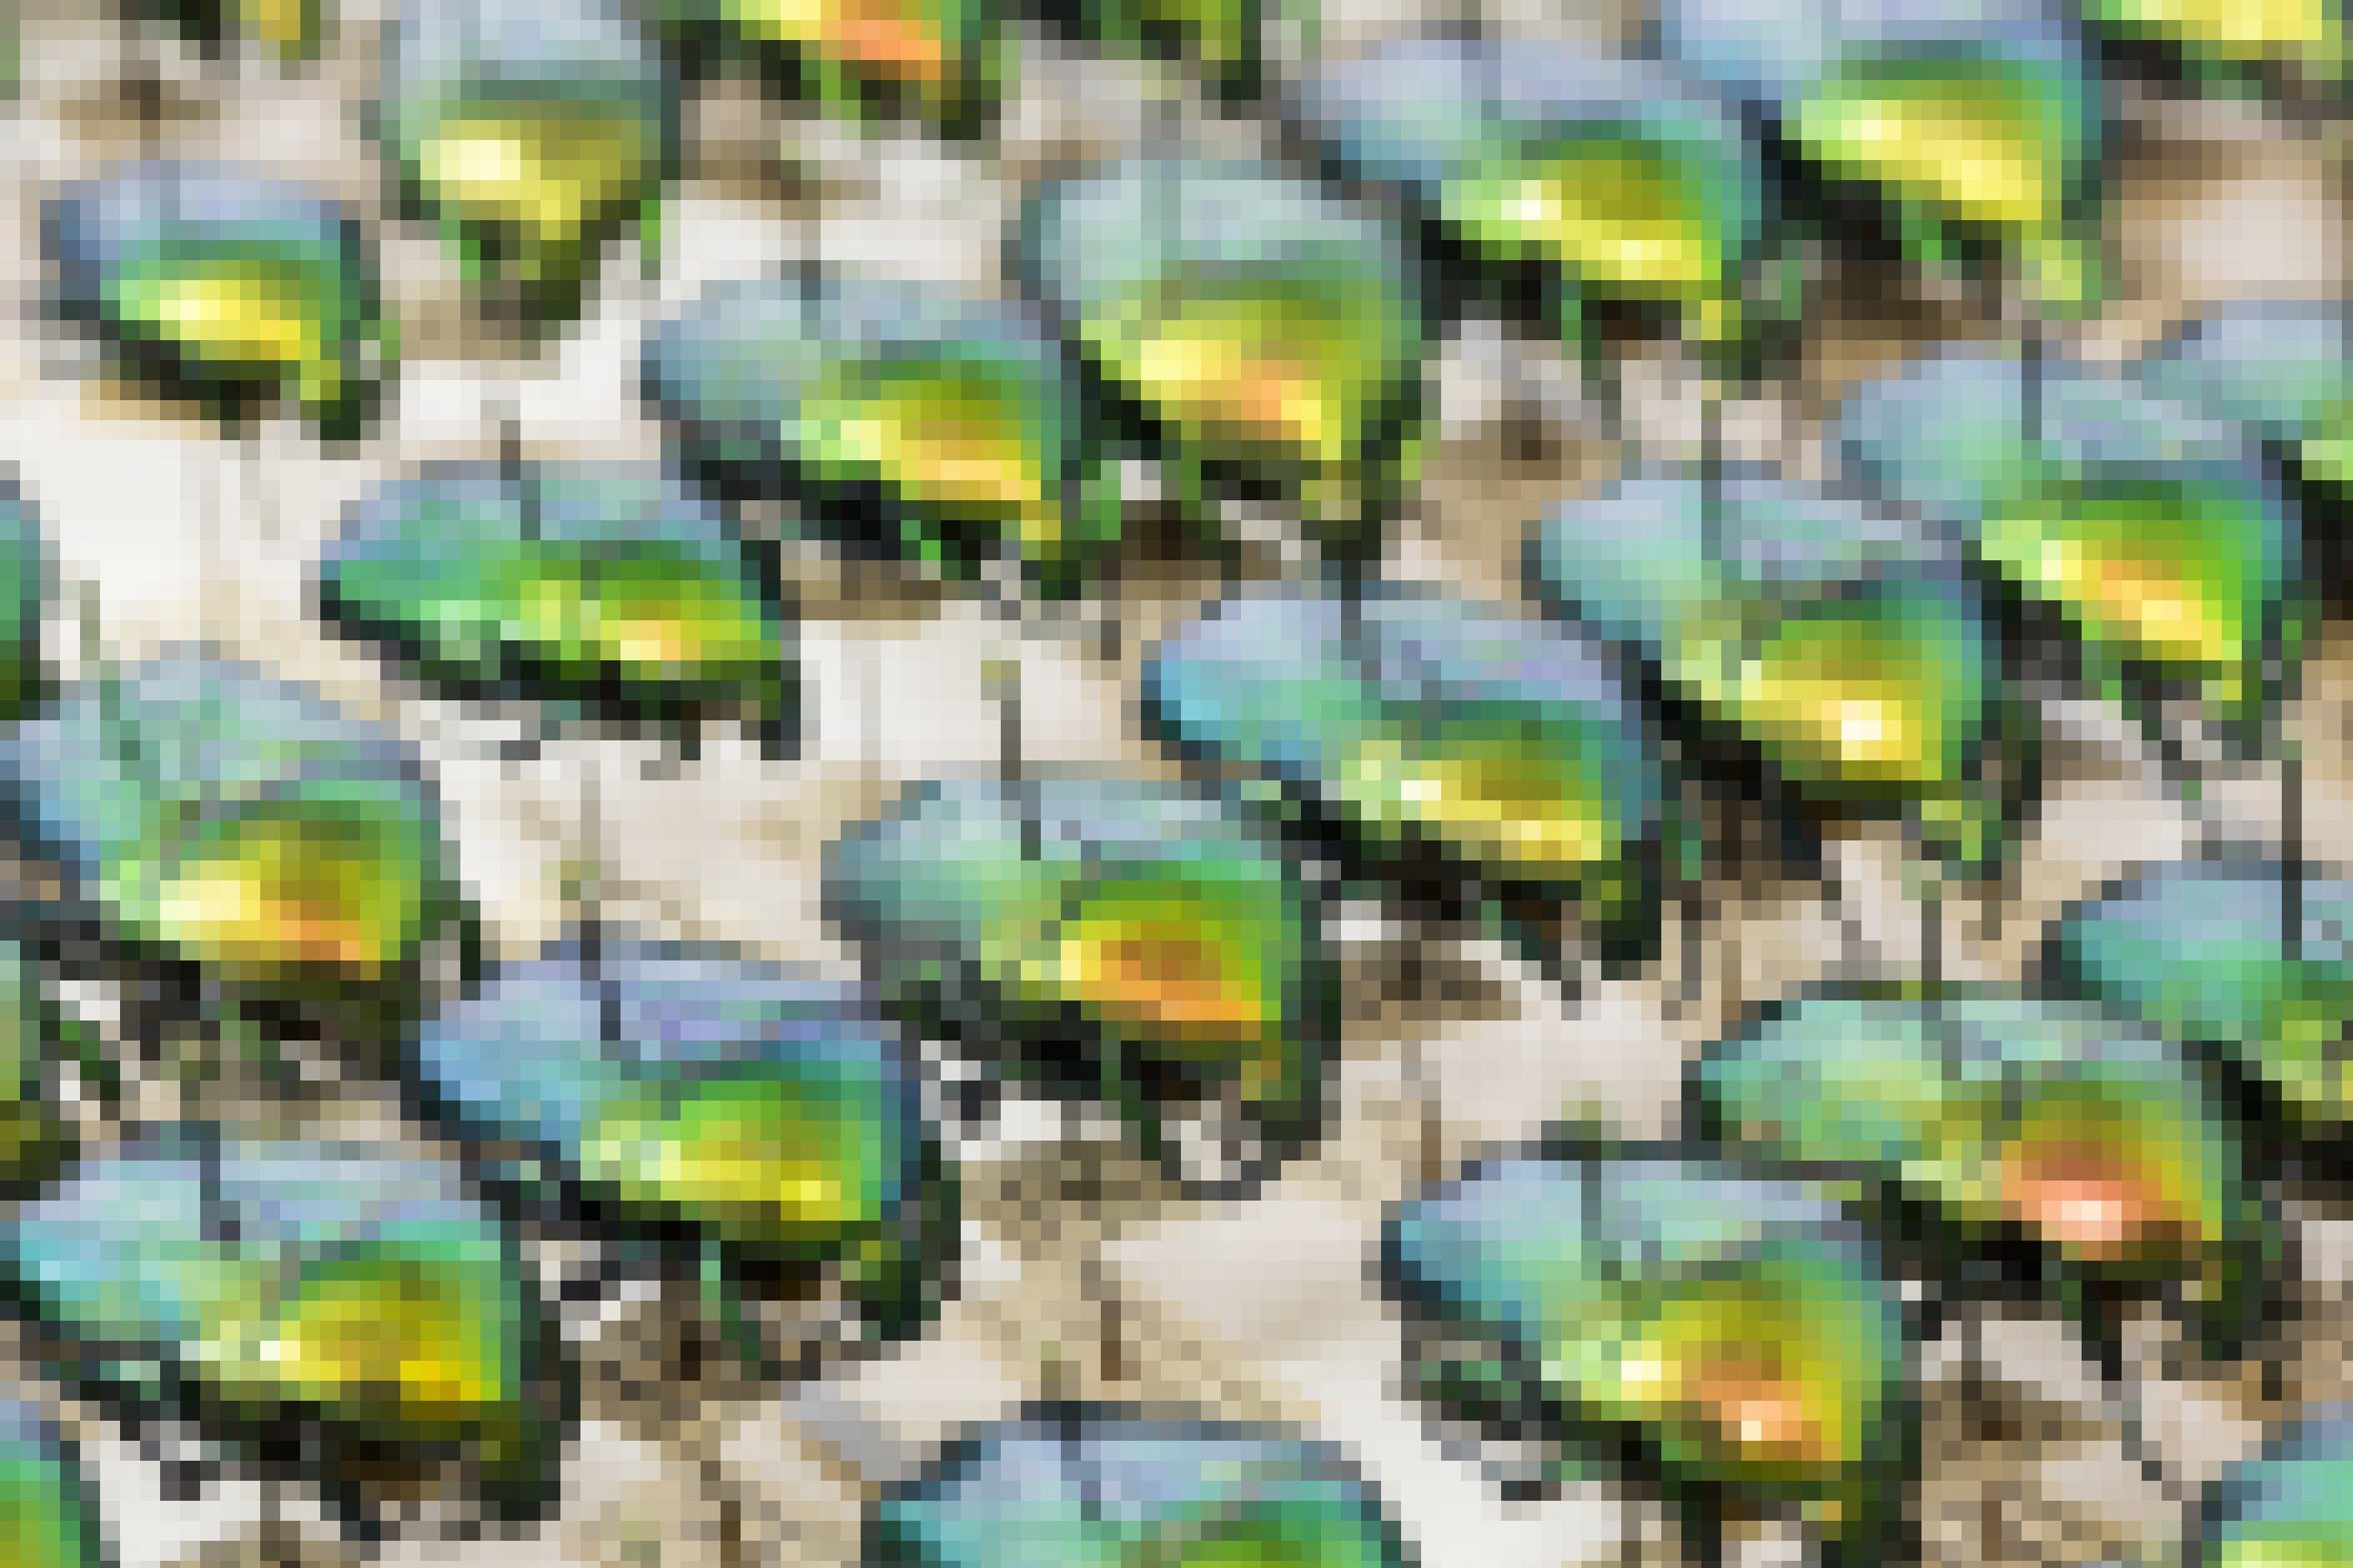 Reihen von auf Nadeln aufgespießter Käfer, die grün-golden glänzen.